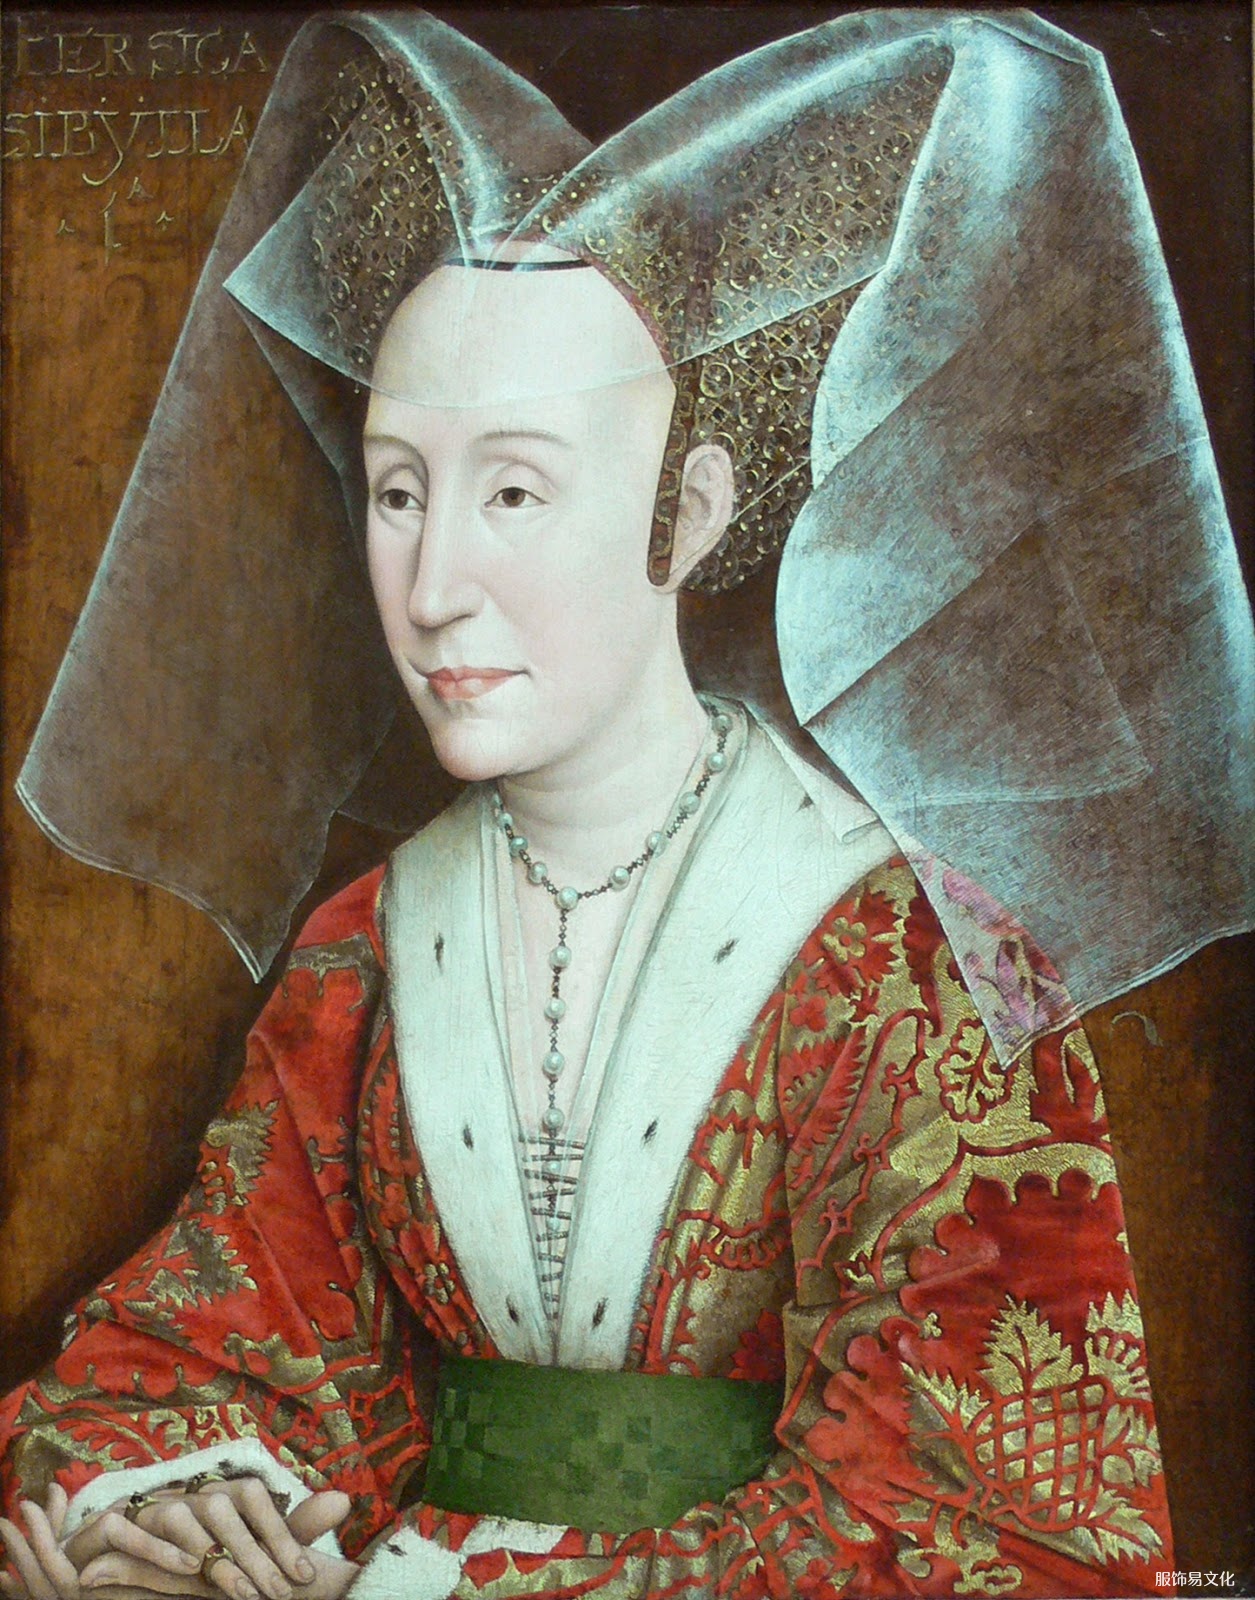 佛兰德斯哥特式服装风格向文艺复兴风格的过渡，1450-1475